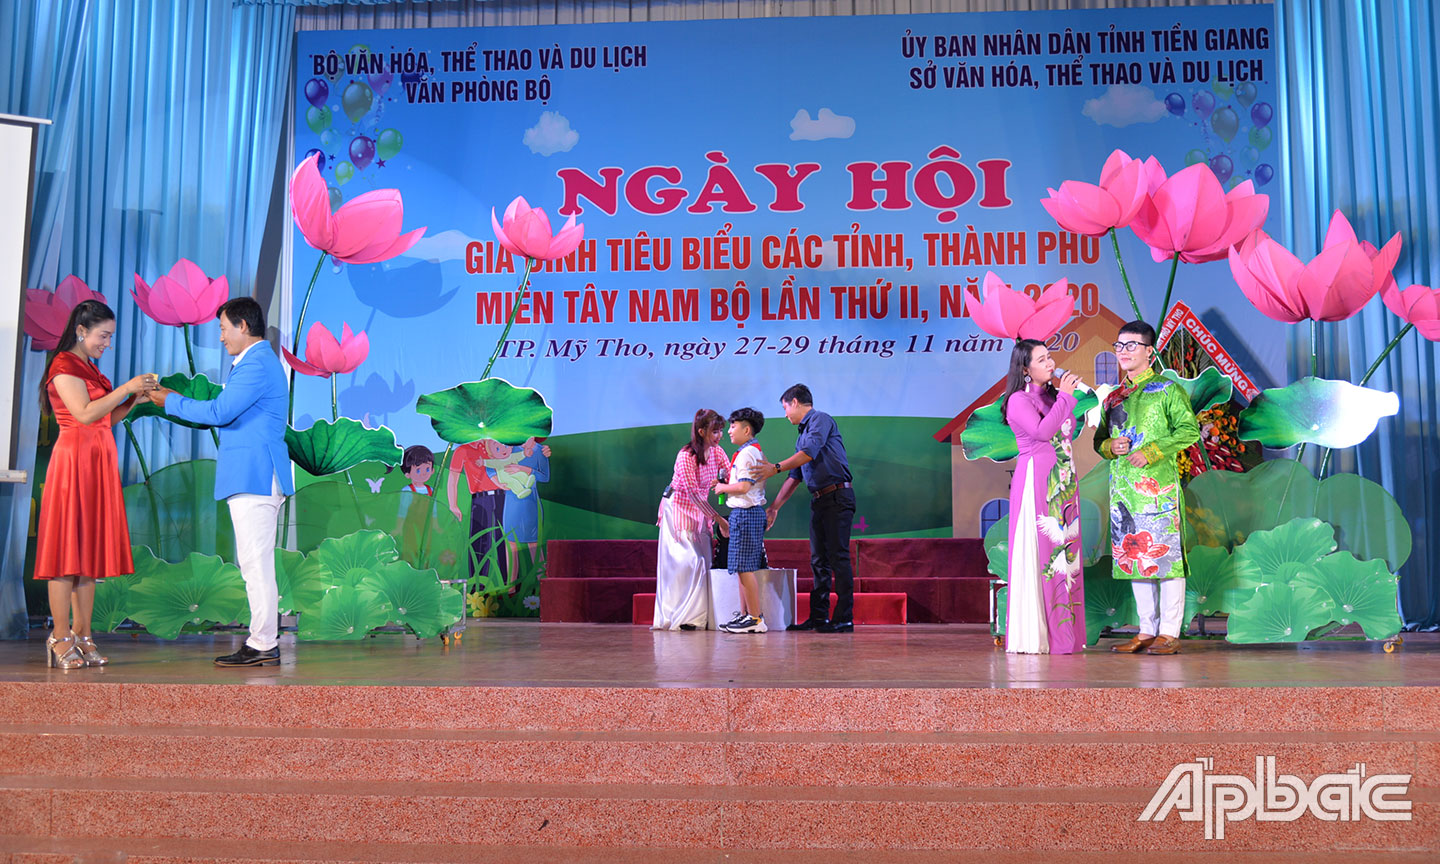 Các gia đình tham gia Ngày hội Gia đình tiêu biểu các tỉnh, thành phố miền Tây Nam bộ lần thứ II, năm 2020 tổ chức tại Tiền Giang. 